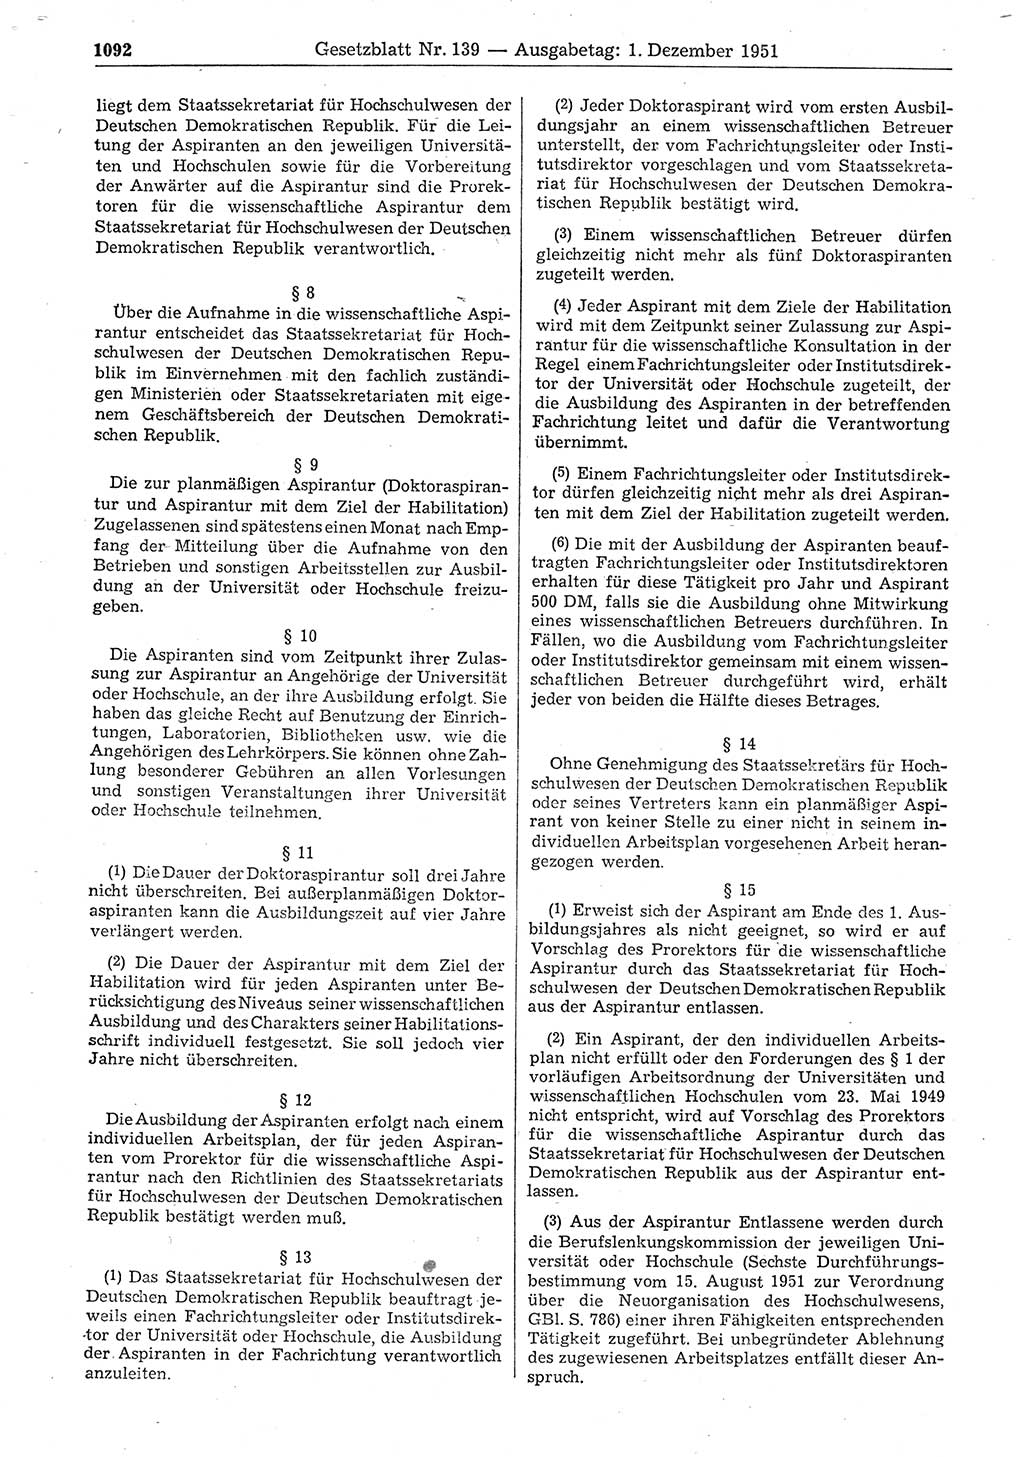 Gesetzblatt (GBl.) der Deutschen Demokratischen Republik (DDR) 1951, Seite 1092 (GBl. DDR 1951, S. 1092)